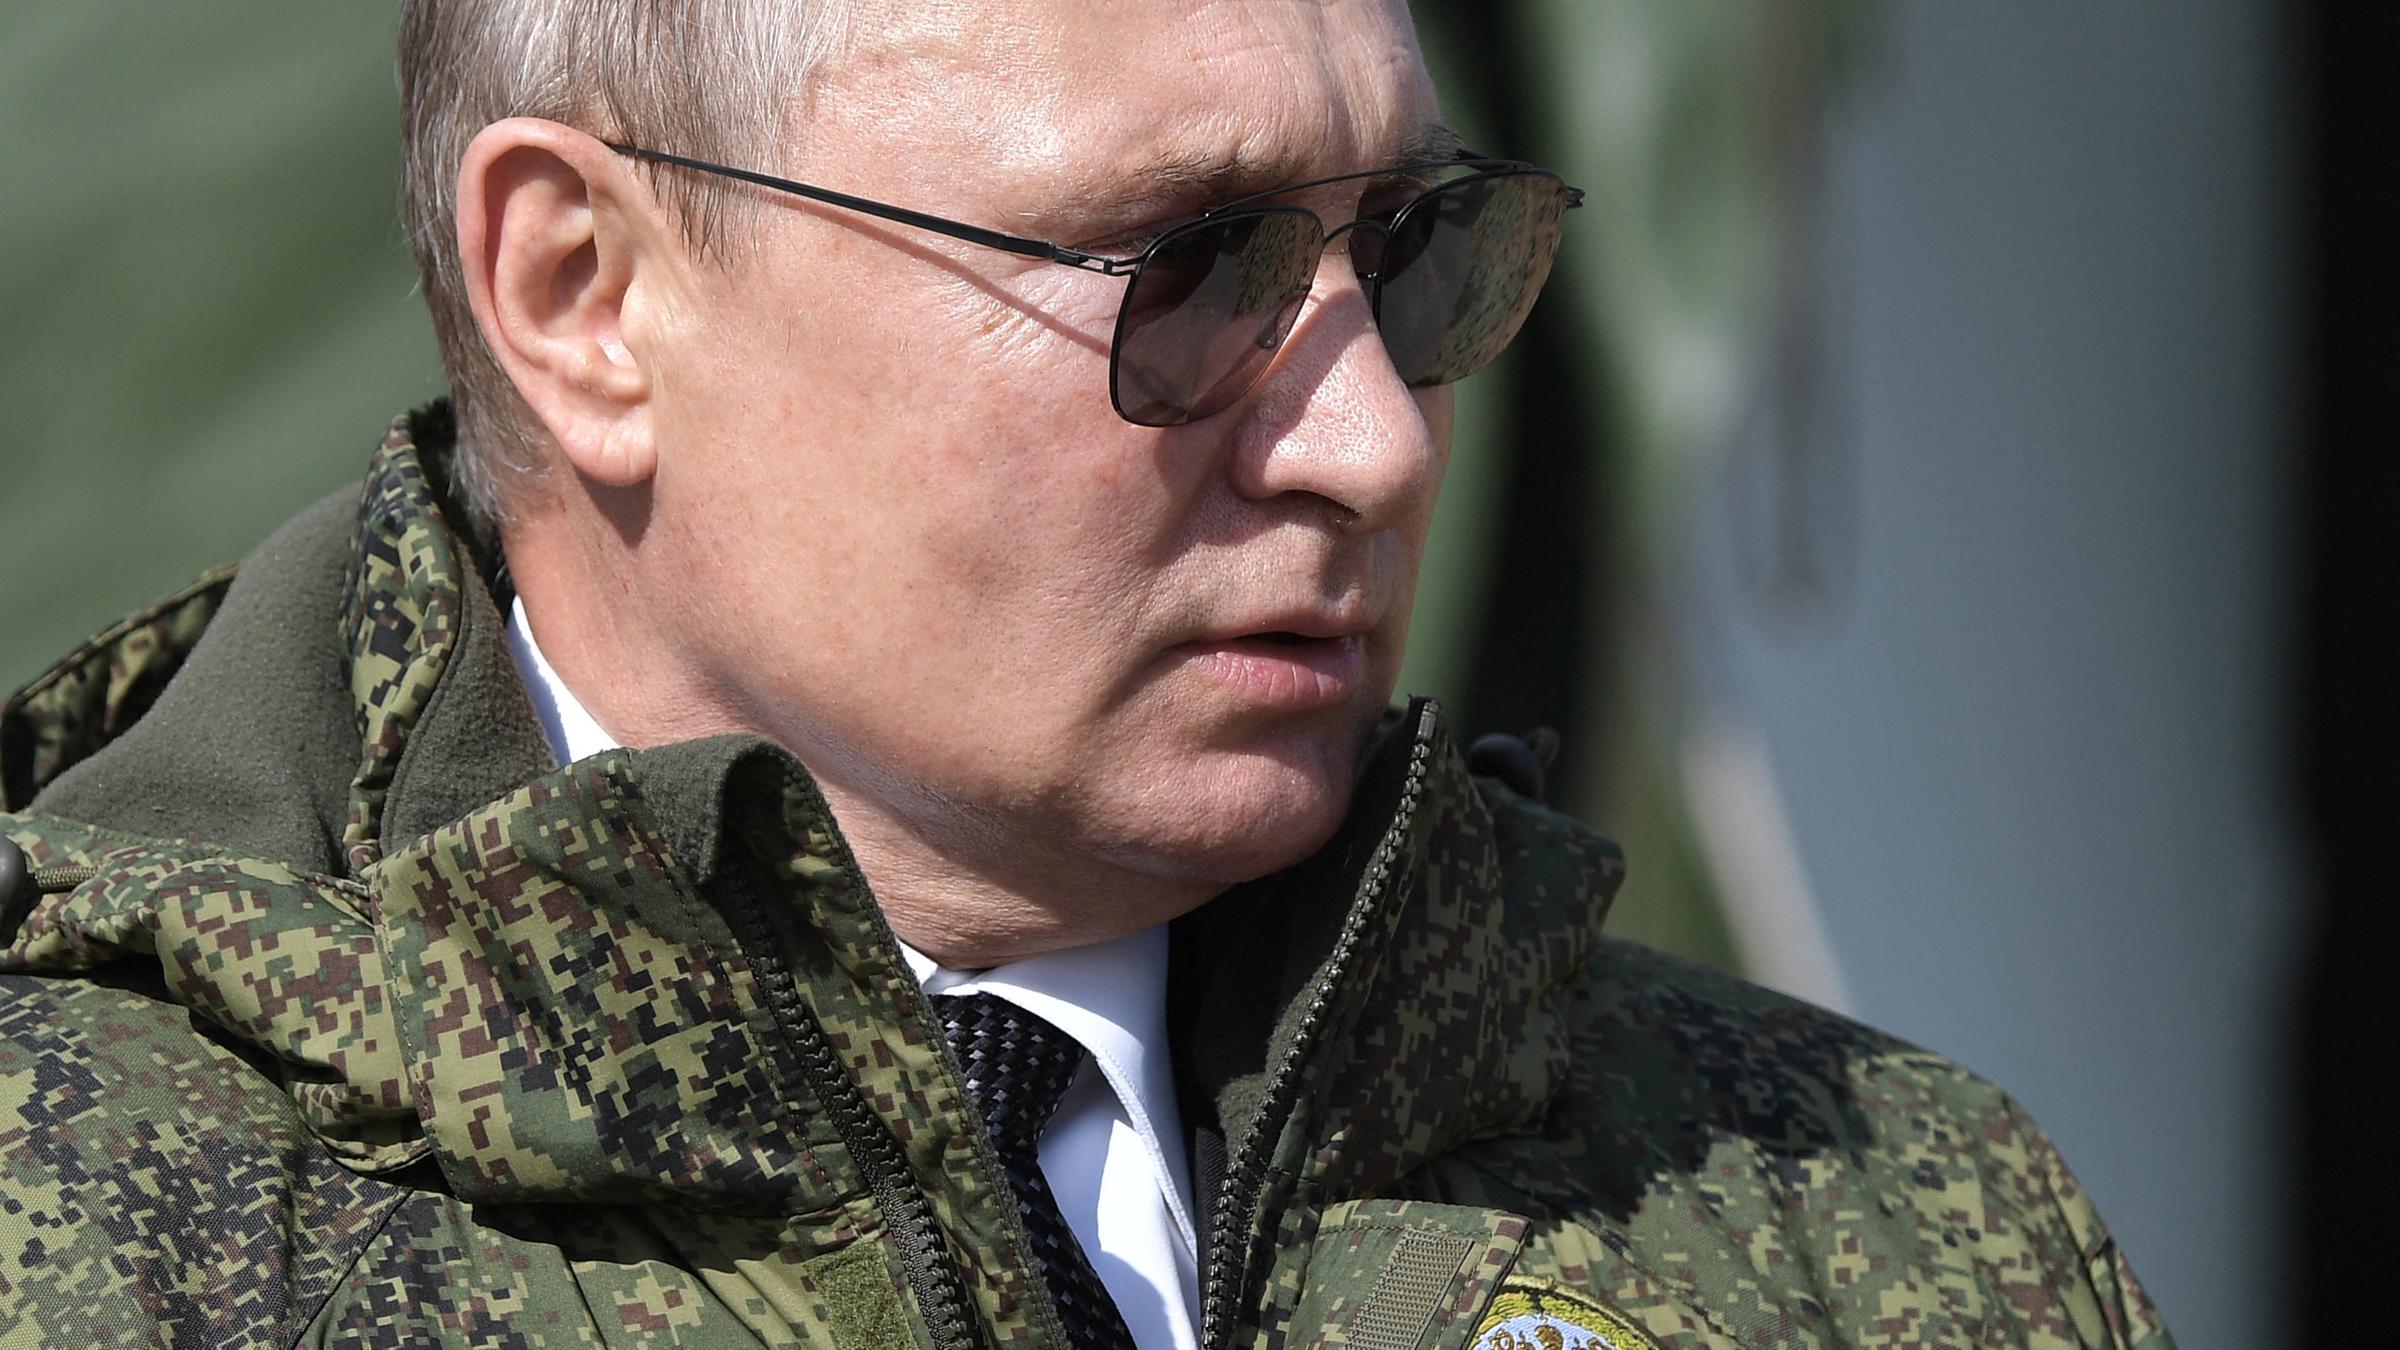 "Putin gegen die Welt": Der russische Präsident Wladimir Putin bei der Militärübung im Jahr 2019 in Militärjacke und Sonnenbrille.